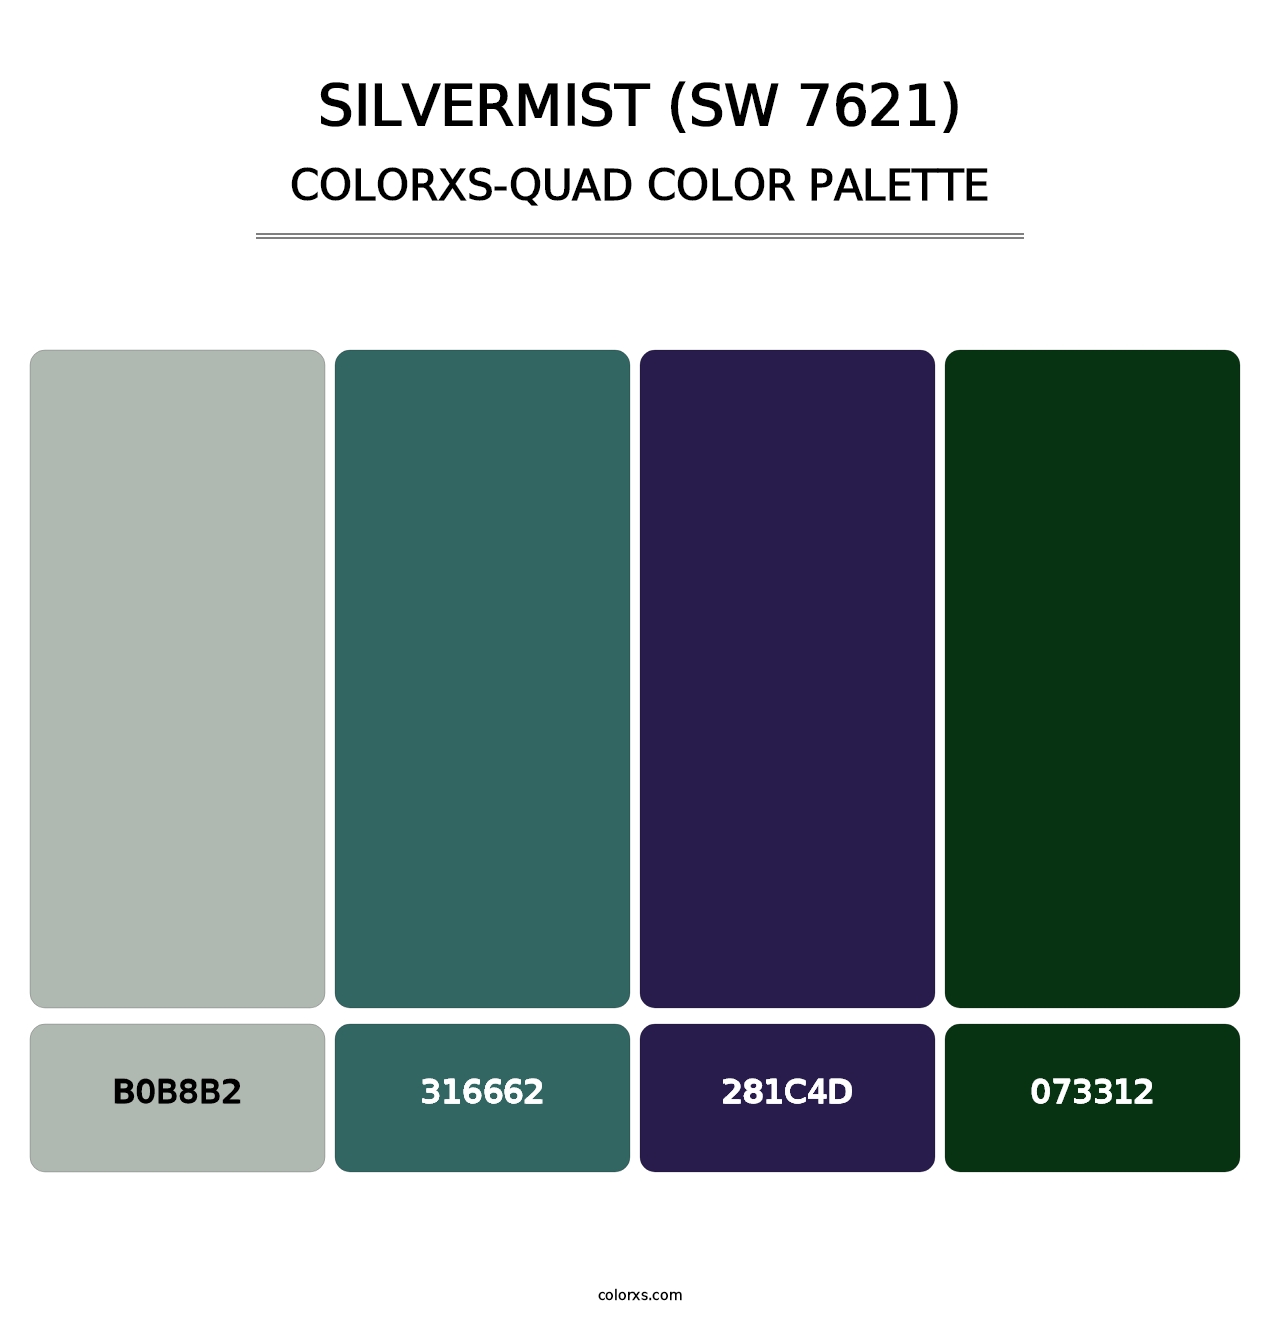 Silvermist (SW 7621) - Colorxs Quad Palette